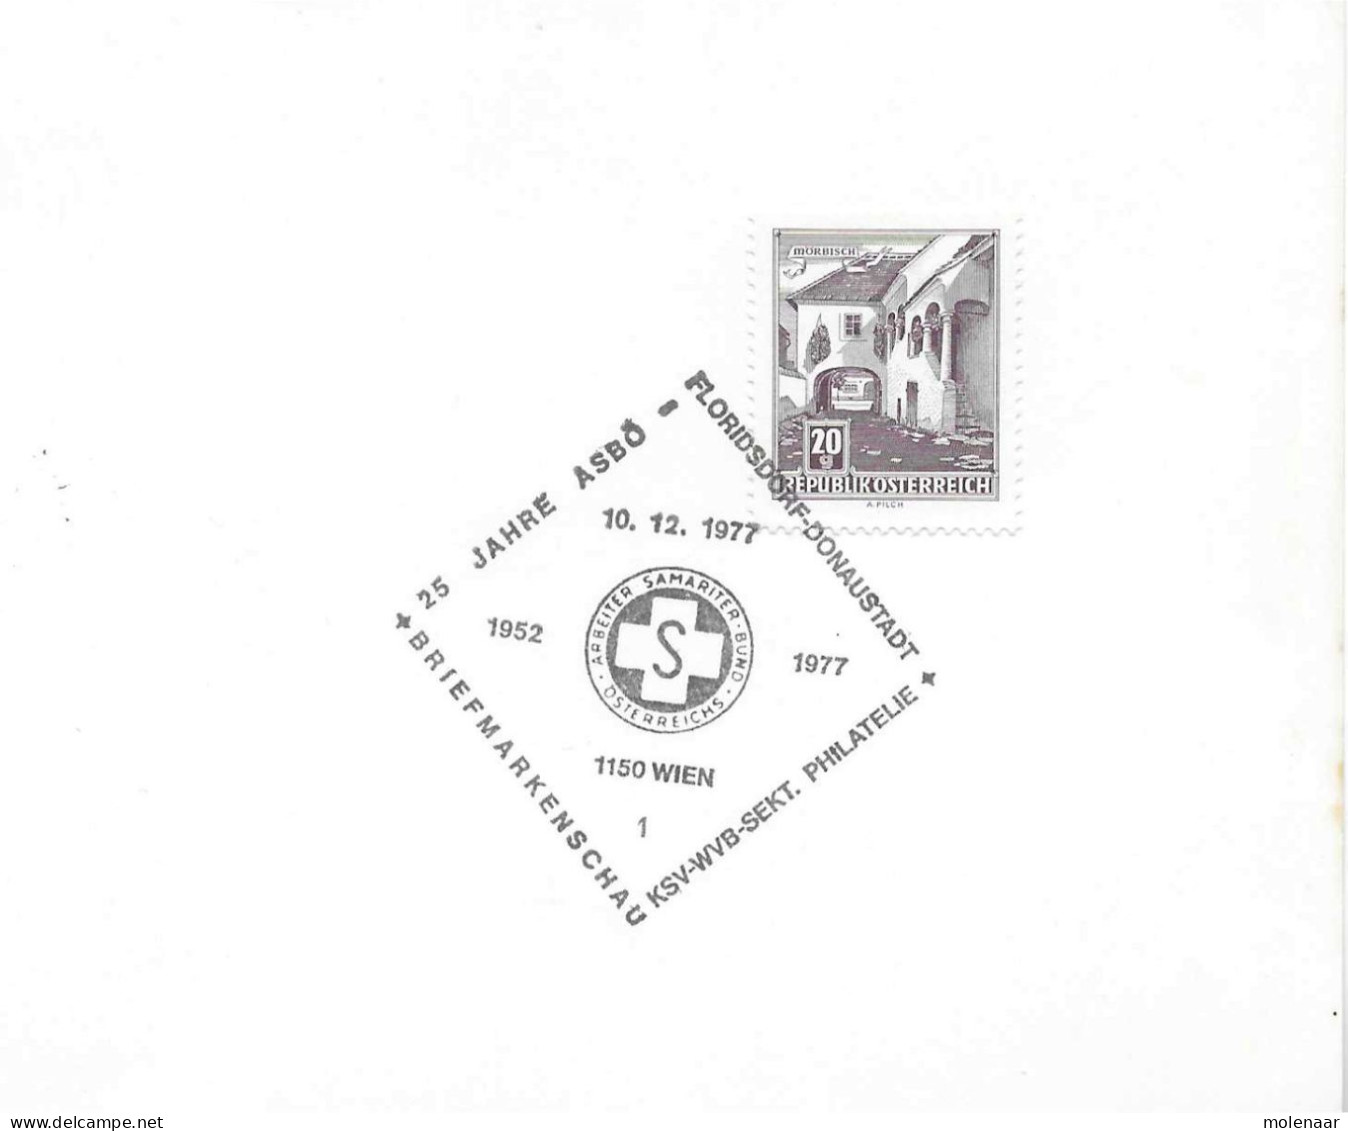 Postzegels > Europa > Oostenrijk >  Republiek > 1971-1900 > Kaart Uit 1977  Met 1 Postzegel (17767) - Lettres & Documents